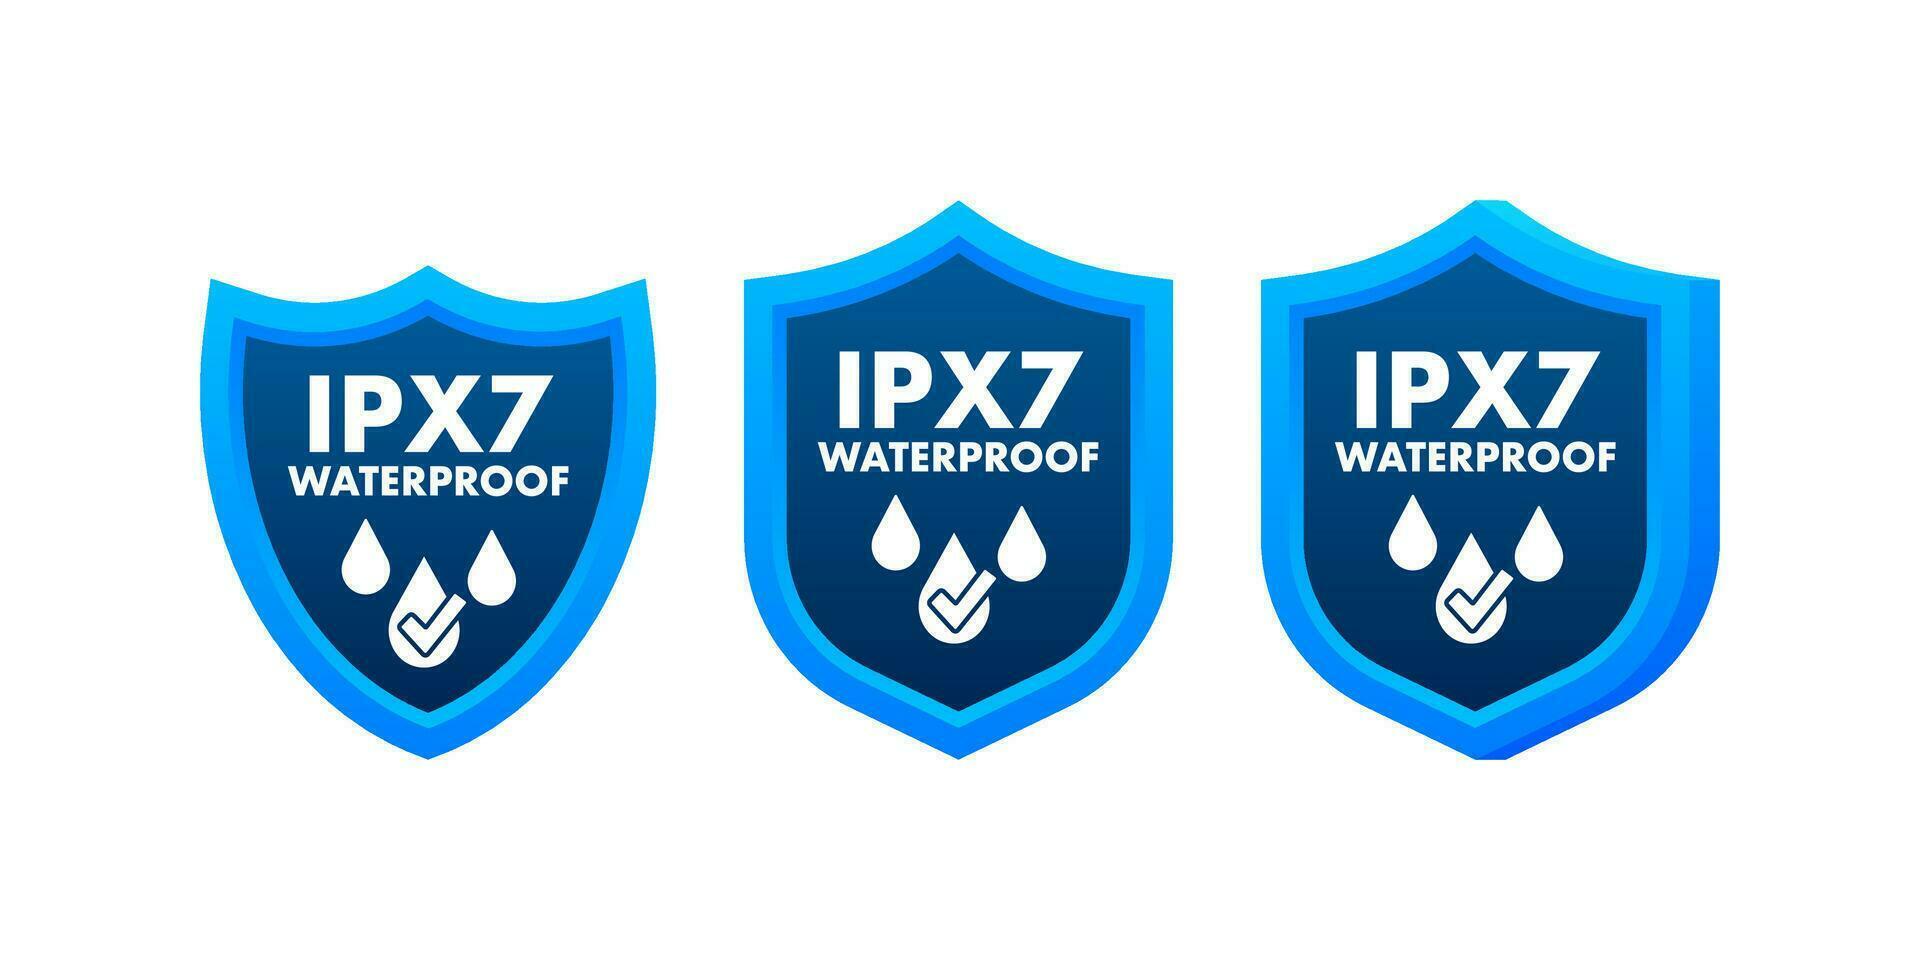 ipx7 wasserdicht, Wasser Widerstand Niveau Information unterzeichnen. vektor